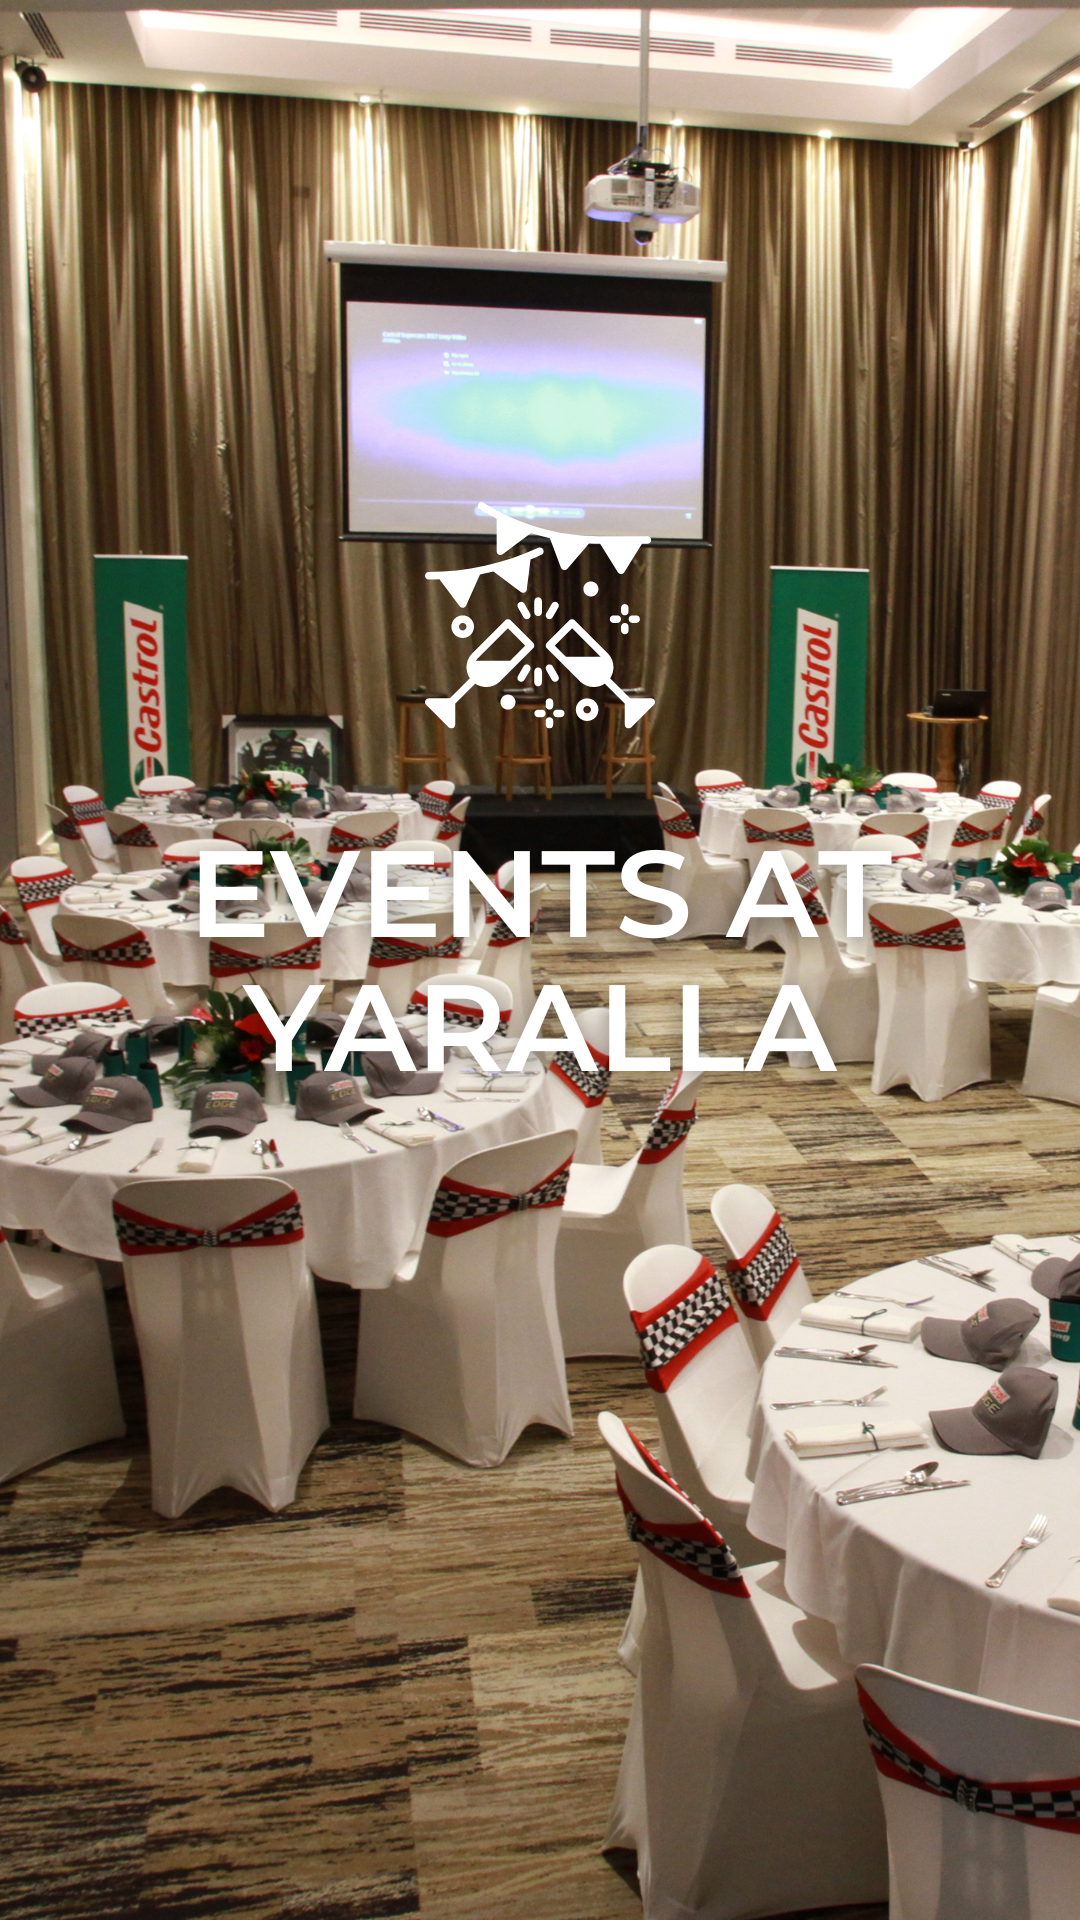 Events at Yaralla